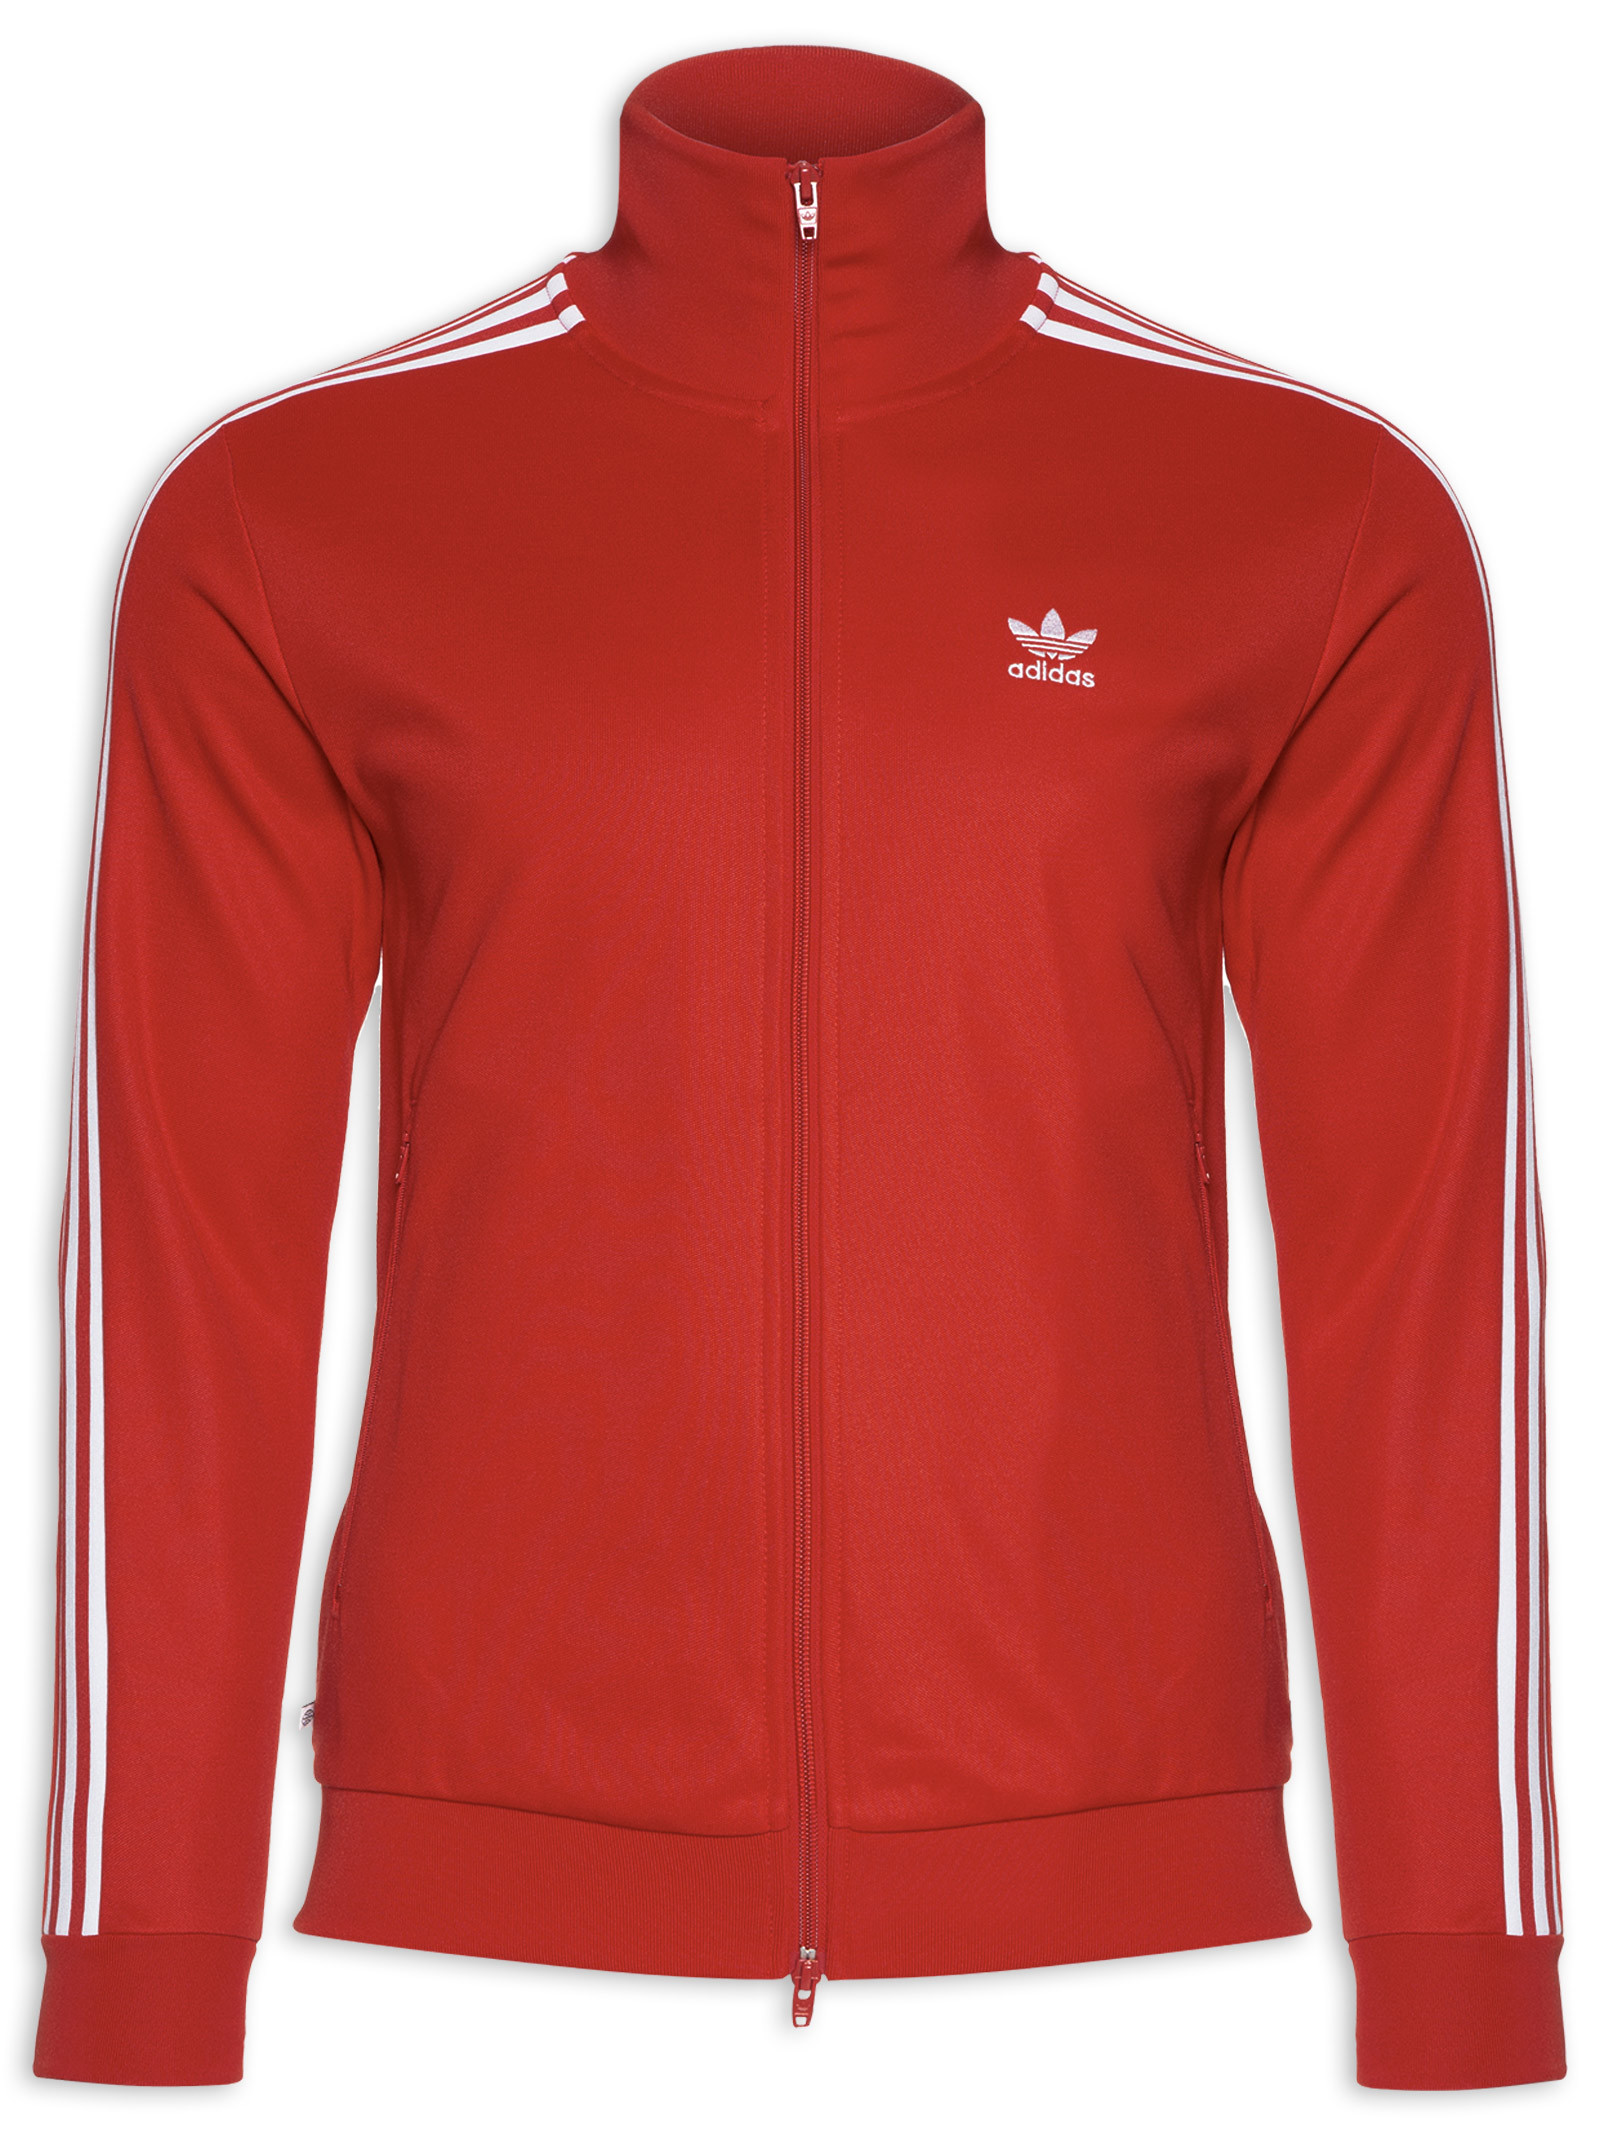 Beckenbauer Tt - Adidas - - Shop2gether